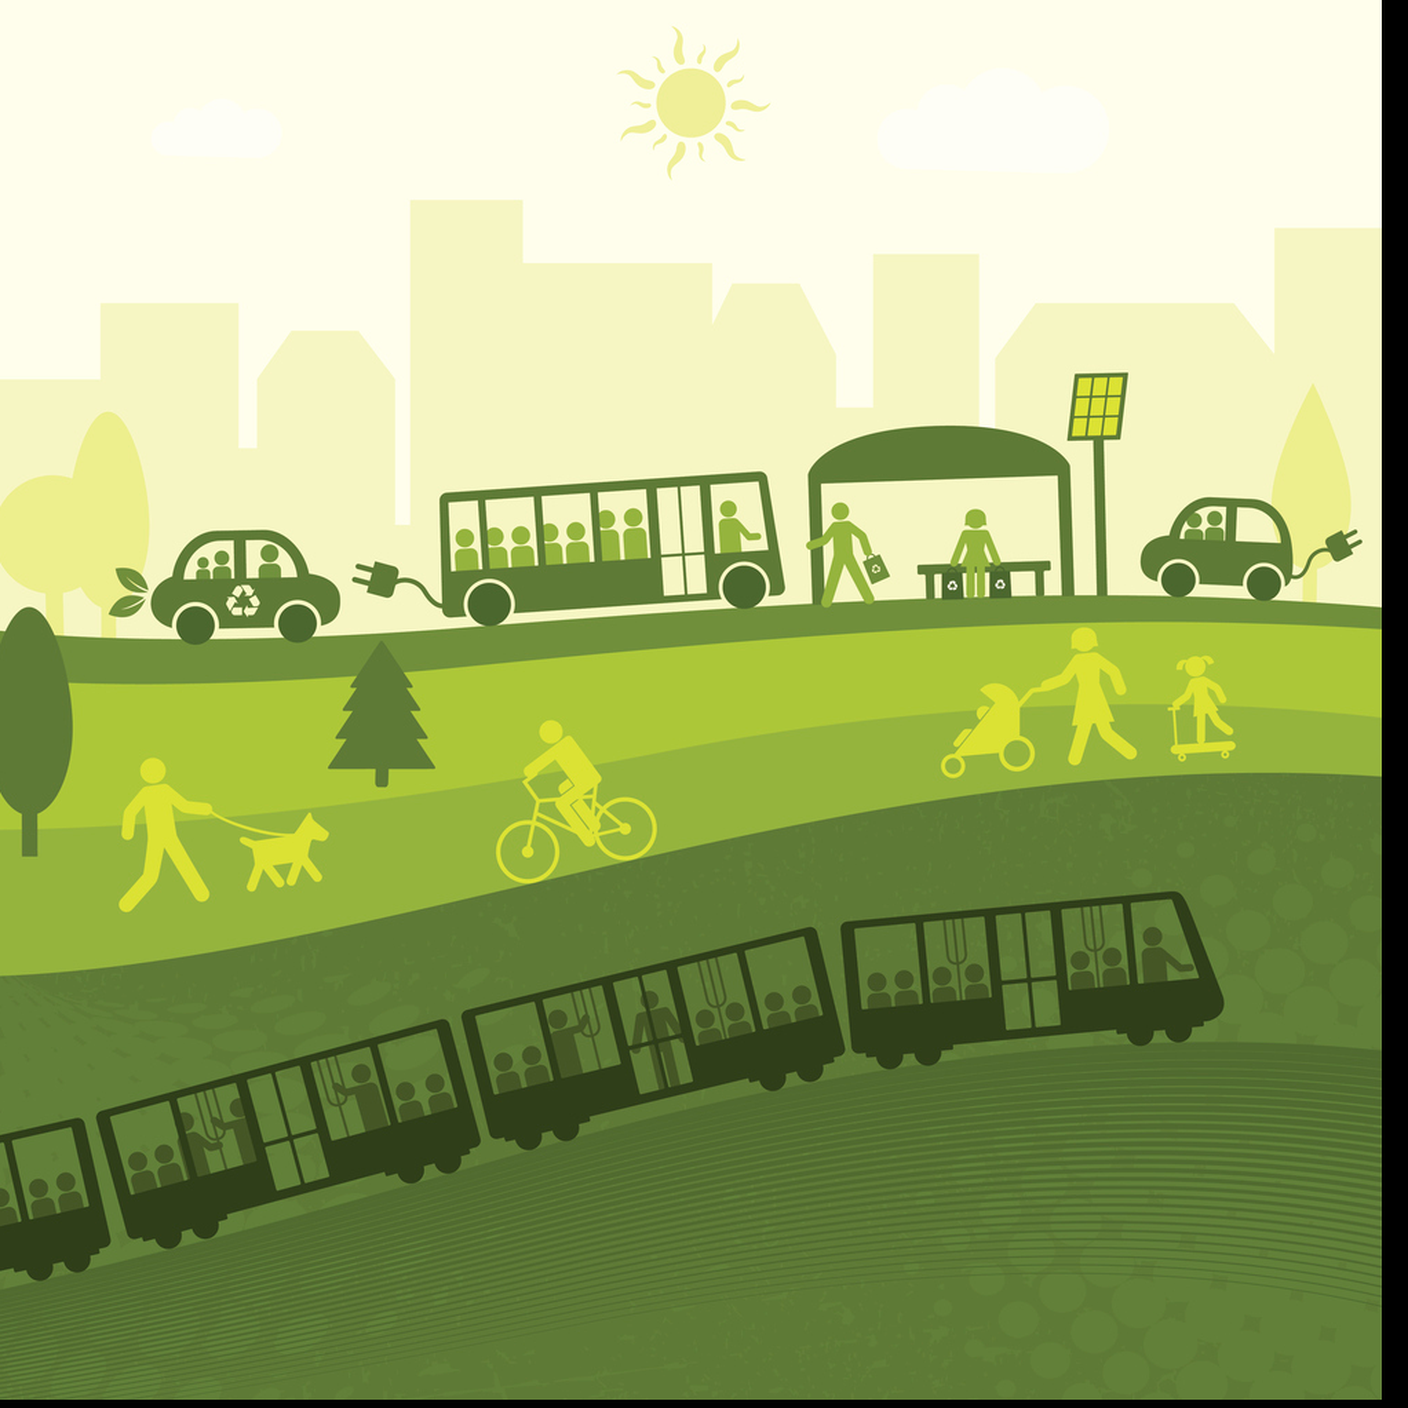 Mobilità sostenibile, autobus, Bicicletta, piedi, tram, eco